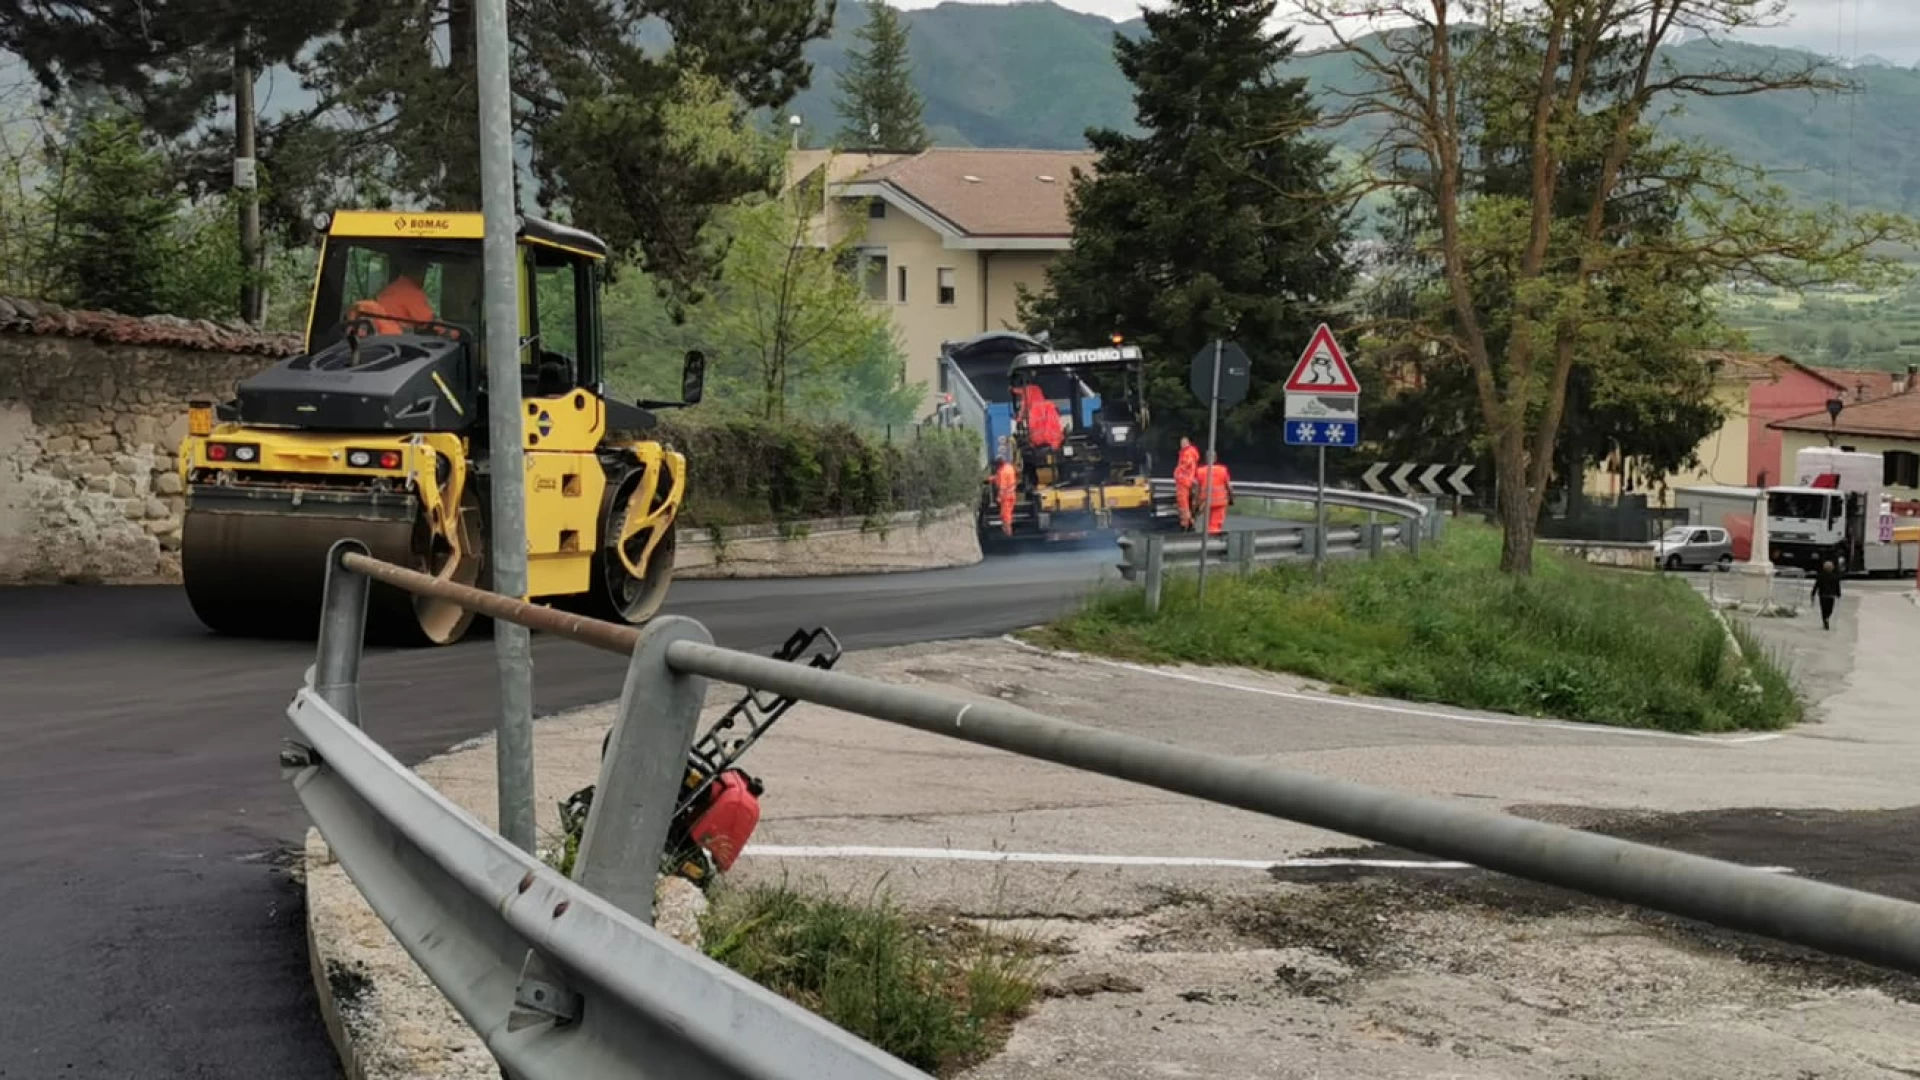 Provincia dell’Aquila conclusi i lavori sulla S.S. 82 e sulla strada regionale 471 in vista del passaggio del Giro d’Italia.